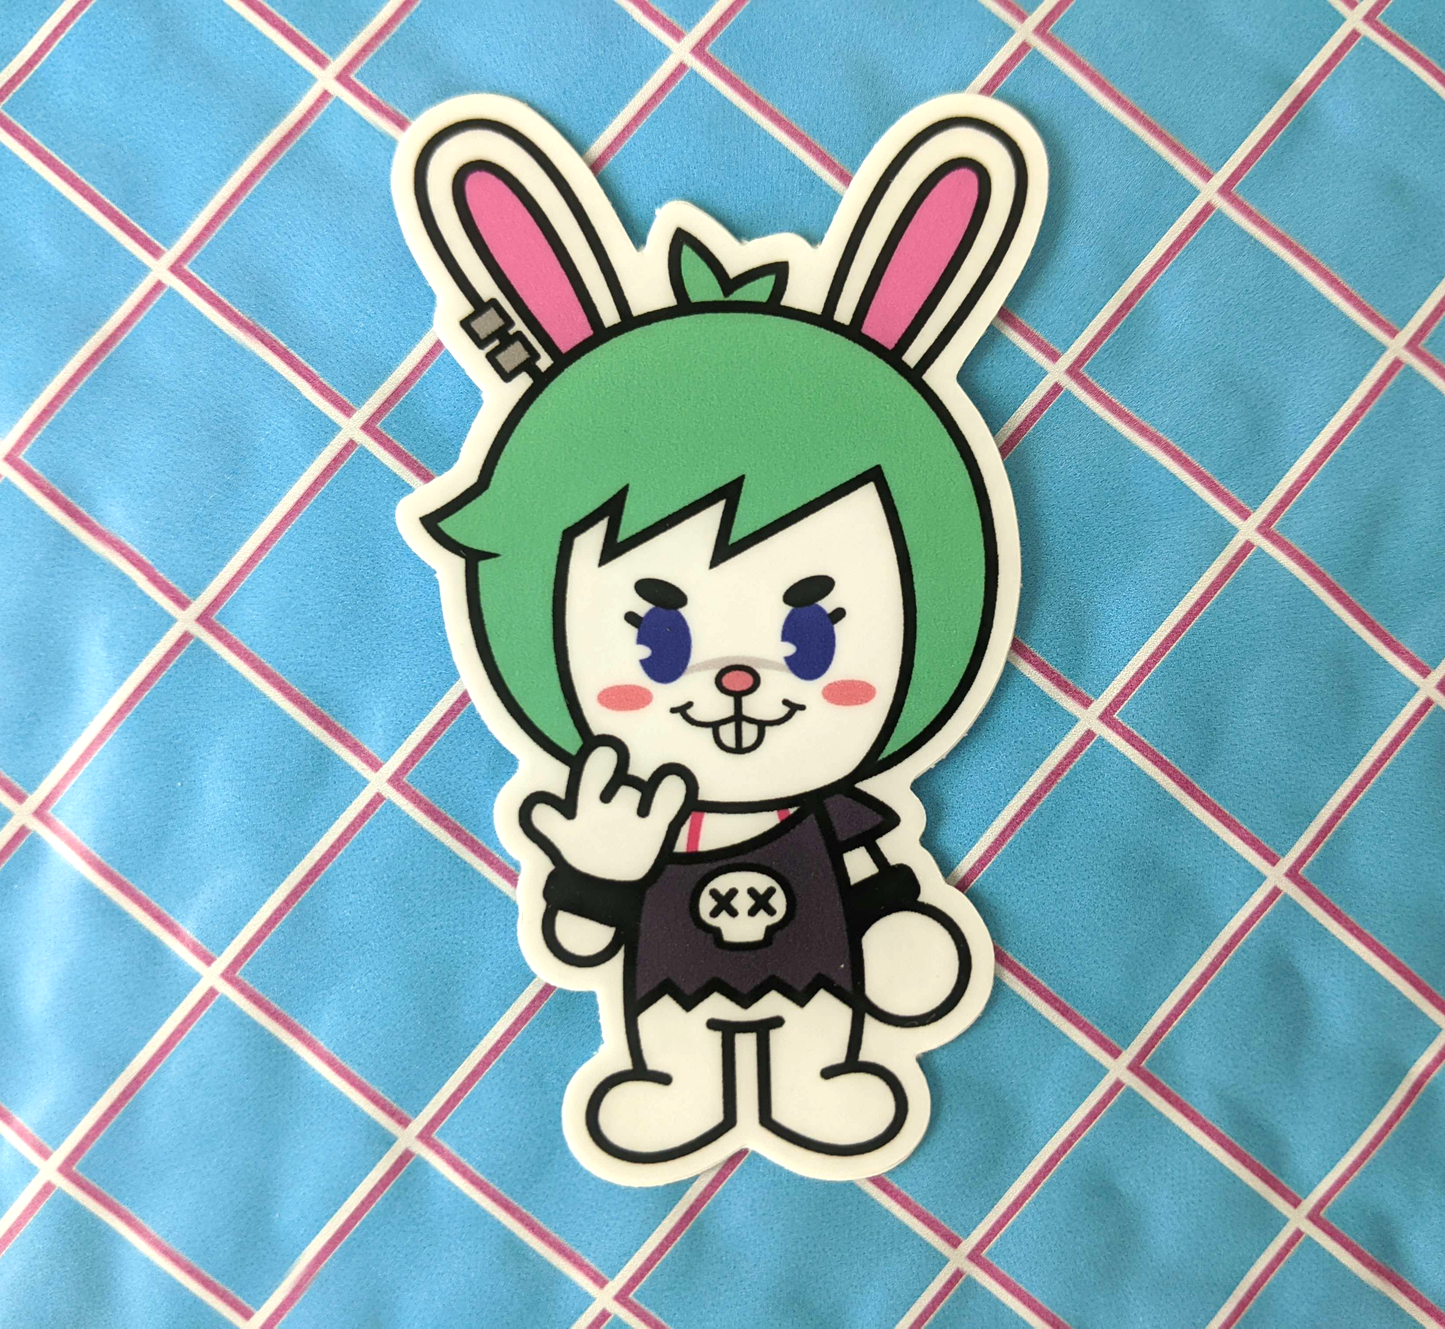 Pepper the Rockin' Rabbit (Vinyl Sticker)